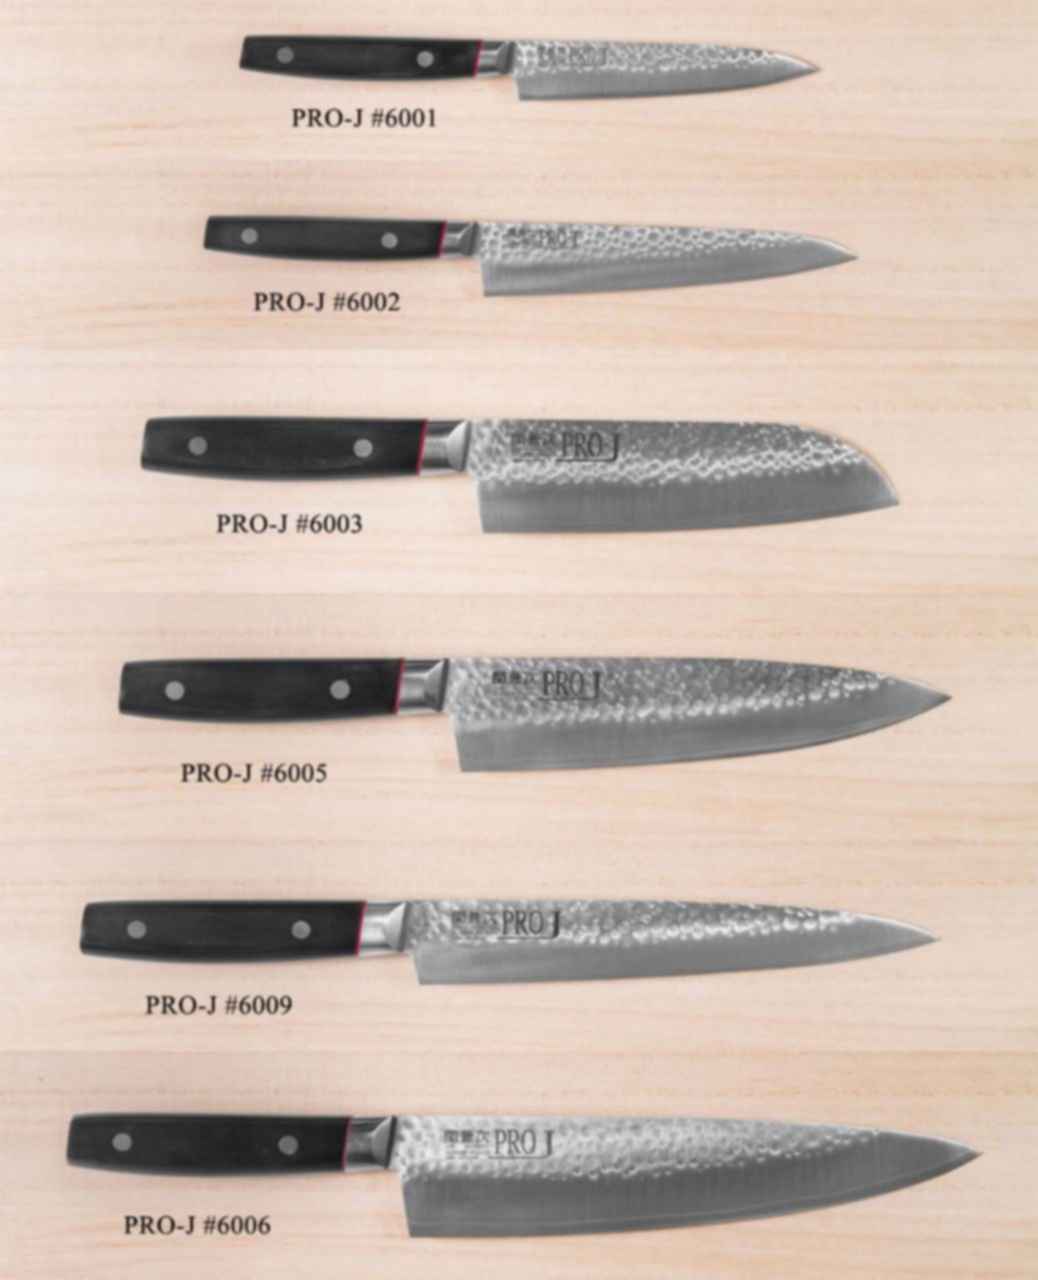 Виды японских кухонных ножей фото с названиями